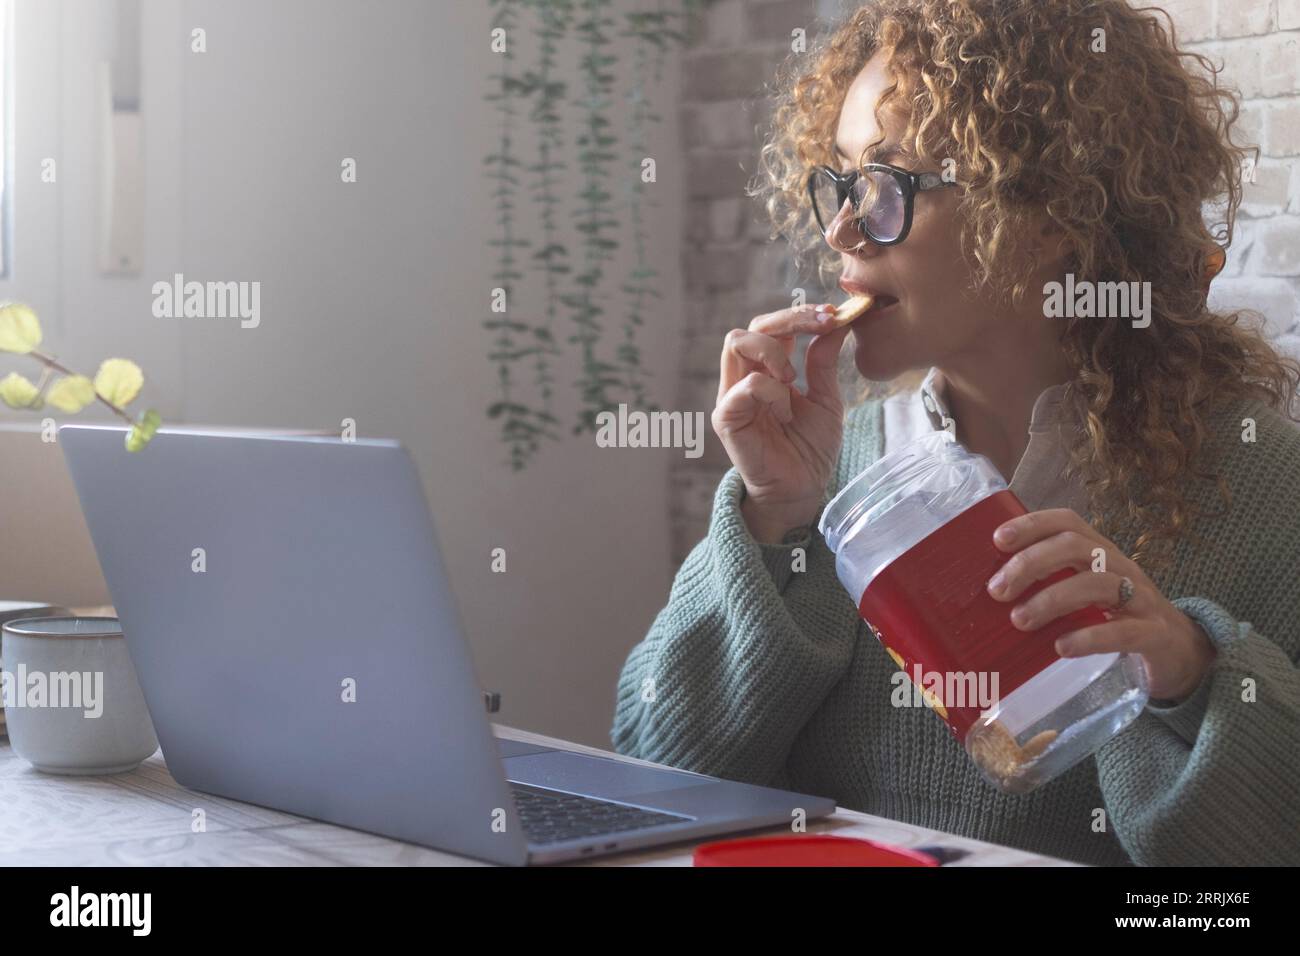 Una donna che usa un computer portatile sul tavolo e mangia biscotti dalla scatola. Le persone mangiano cibo spazzatura e lavorano allo stesso tempo. Persona impegnata a lavorare al computer durante la colazione o la pausa. Stile di vita moderno Foto Stock